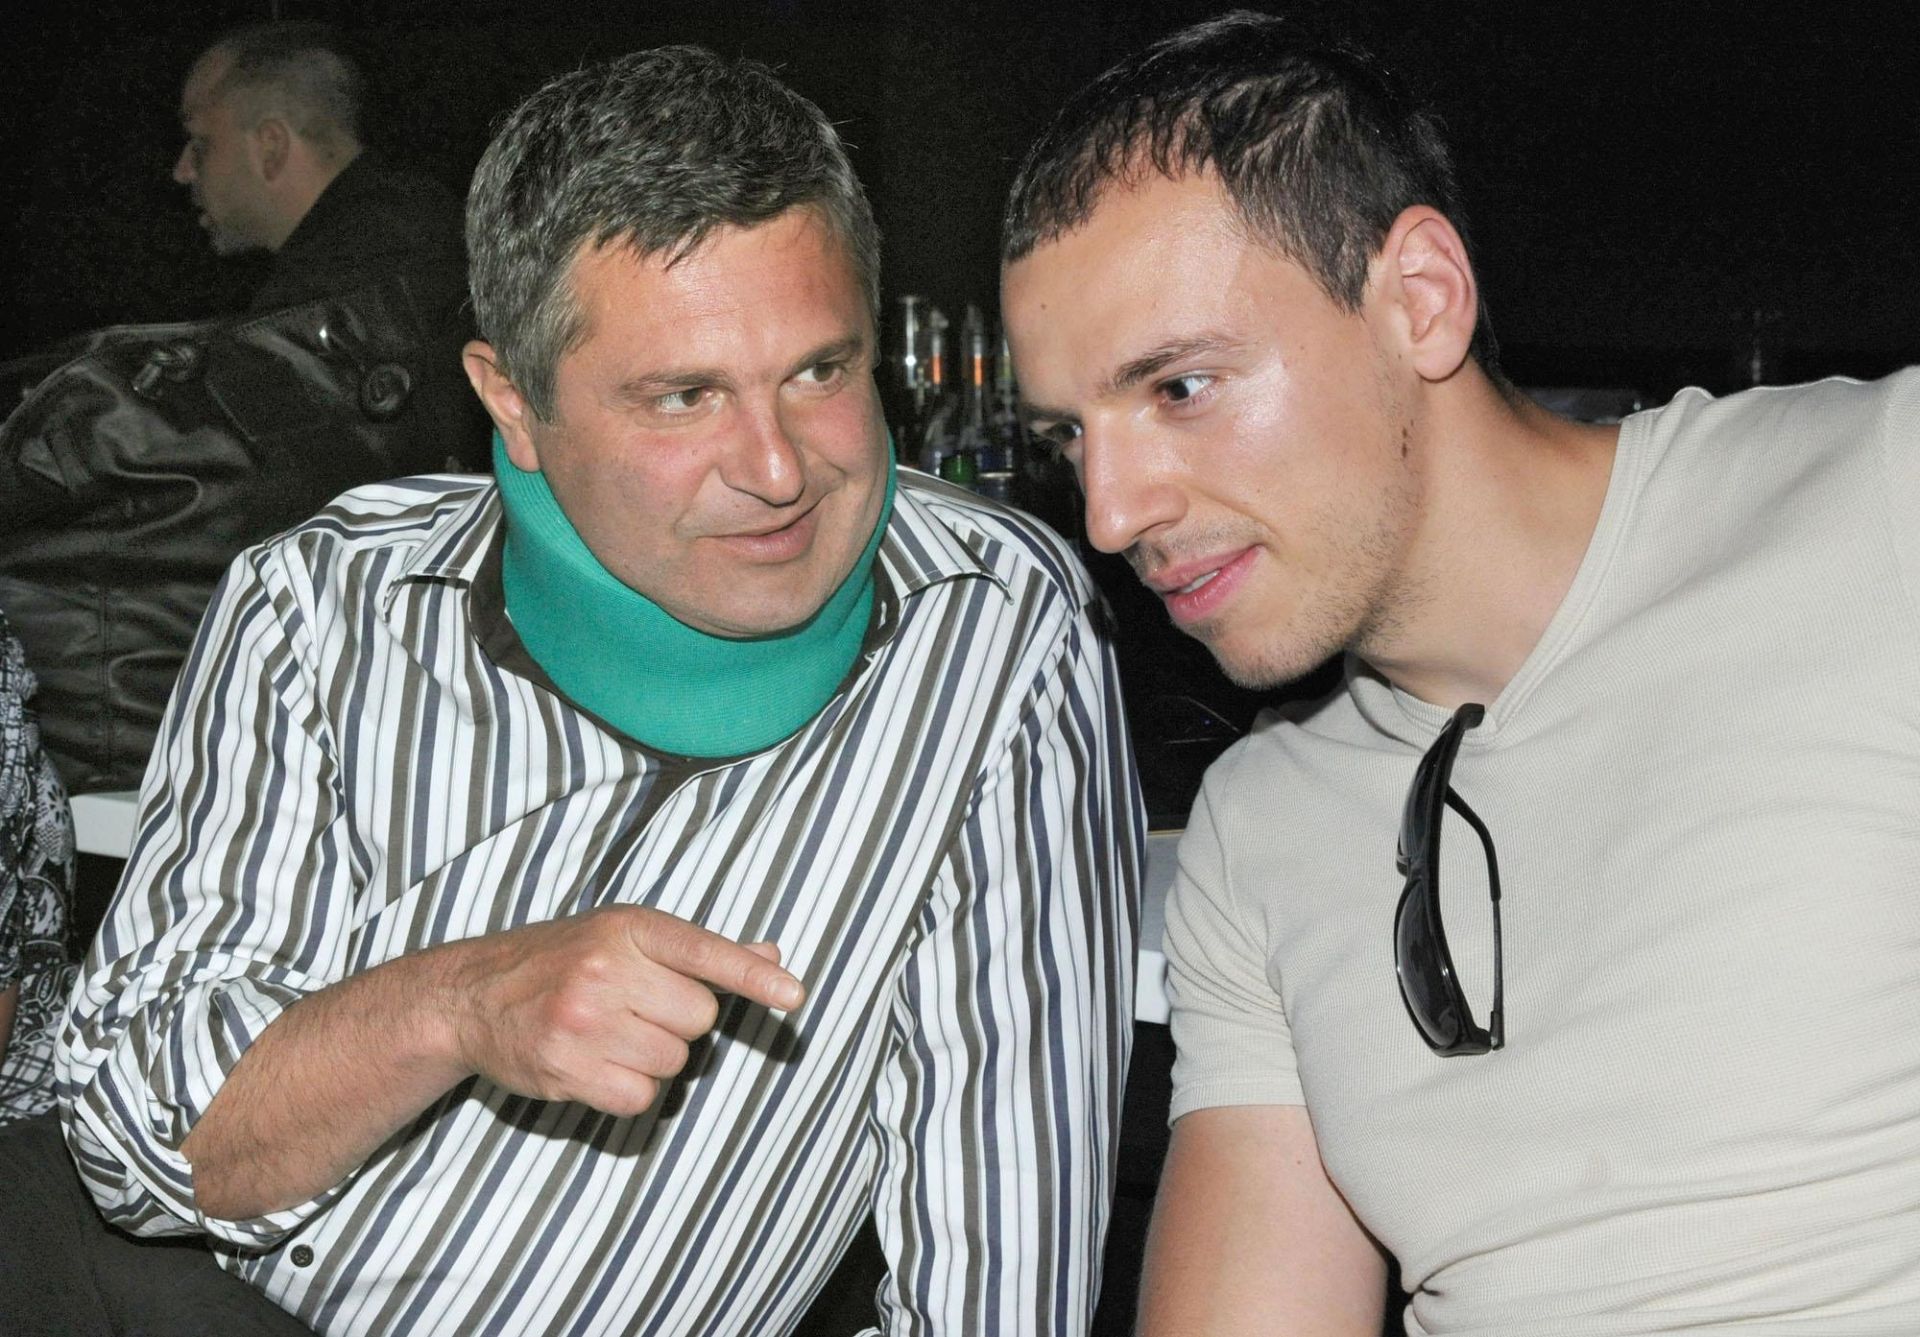 22 юли 2011 г. - Милен Цветков пристигна на годишните журналистически награди VIP Перо с шина на врата и обяви, че налага нова мода - да се ходи с предпазна яка на врата. Според слуховете обаче, той бил сериозно пострадал при автомобилна катастрофа.